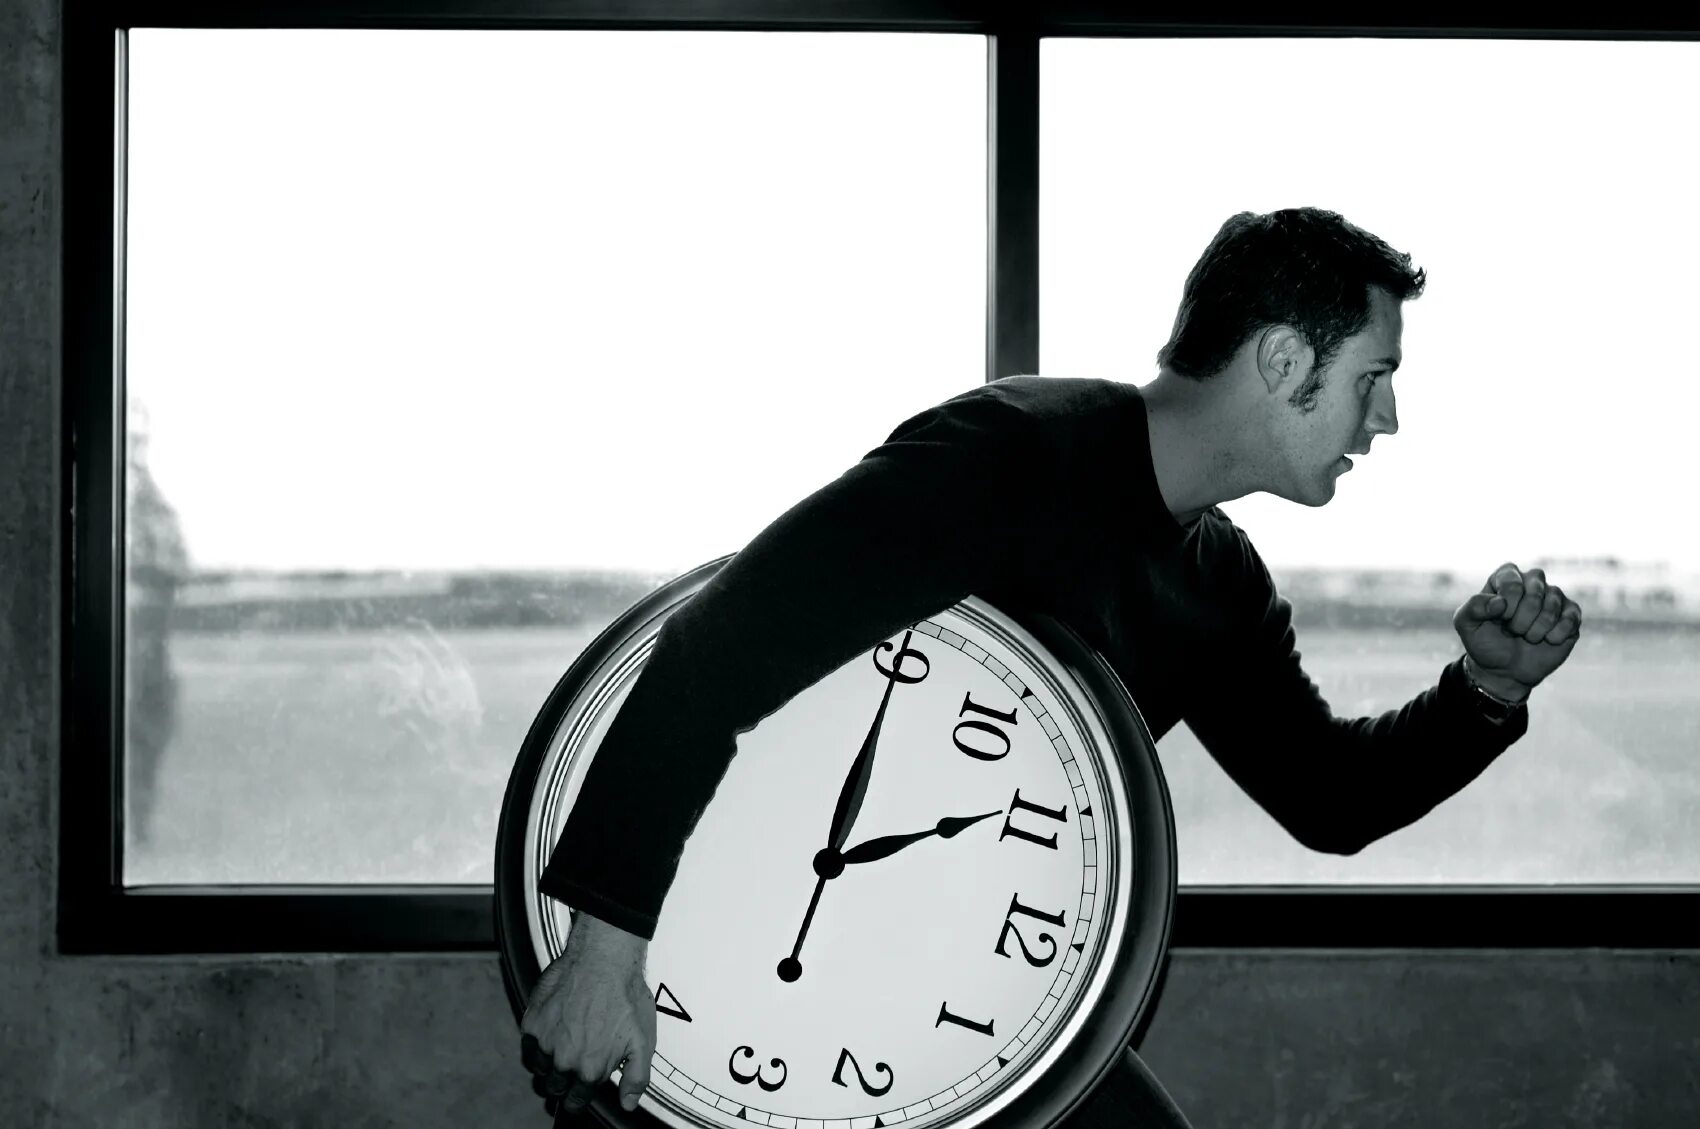 Говорить впустую. Человек часы. Потеря времени. Трата времени впустую. Цените время.